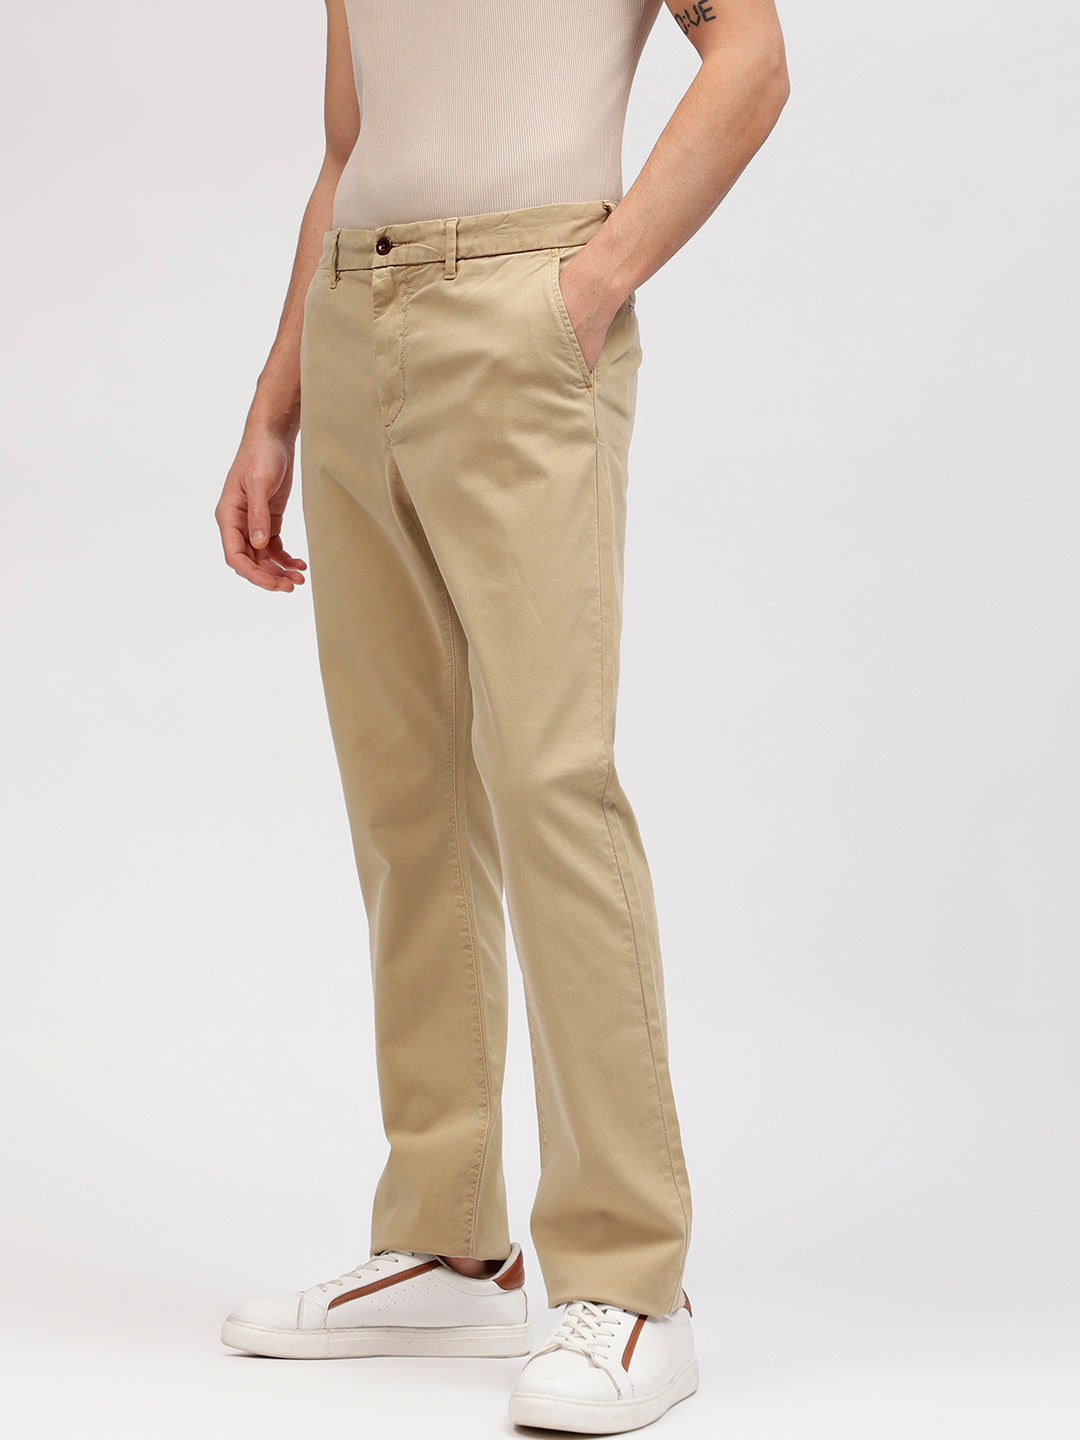 Men's Pleated Trouser - Quality Restaurant Uniforms